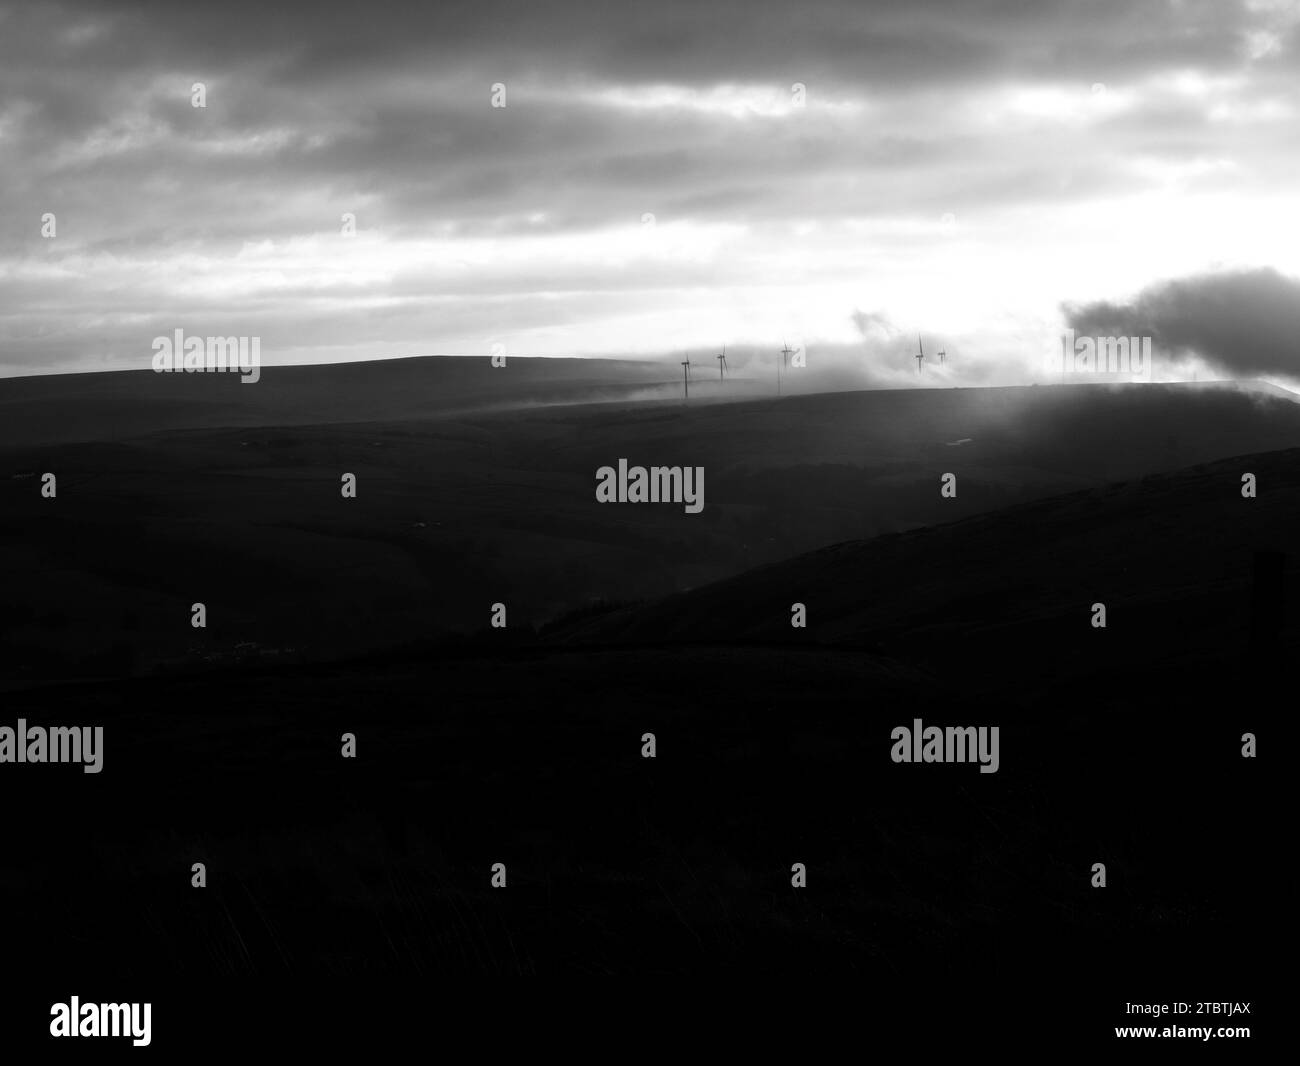 Sonnenaufgang, ein Burnley Hill oben am frühen Morgen Nebel umgeben Windturbine wie eine riesige Waschmaschine, die mit Wolken interagiert, wirkt wie tanzende Wolken. Stockfoto